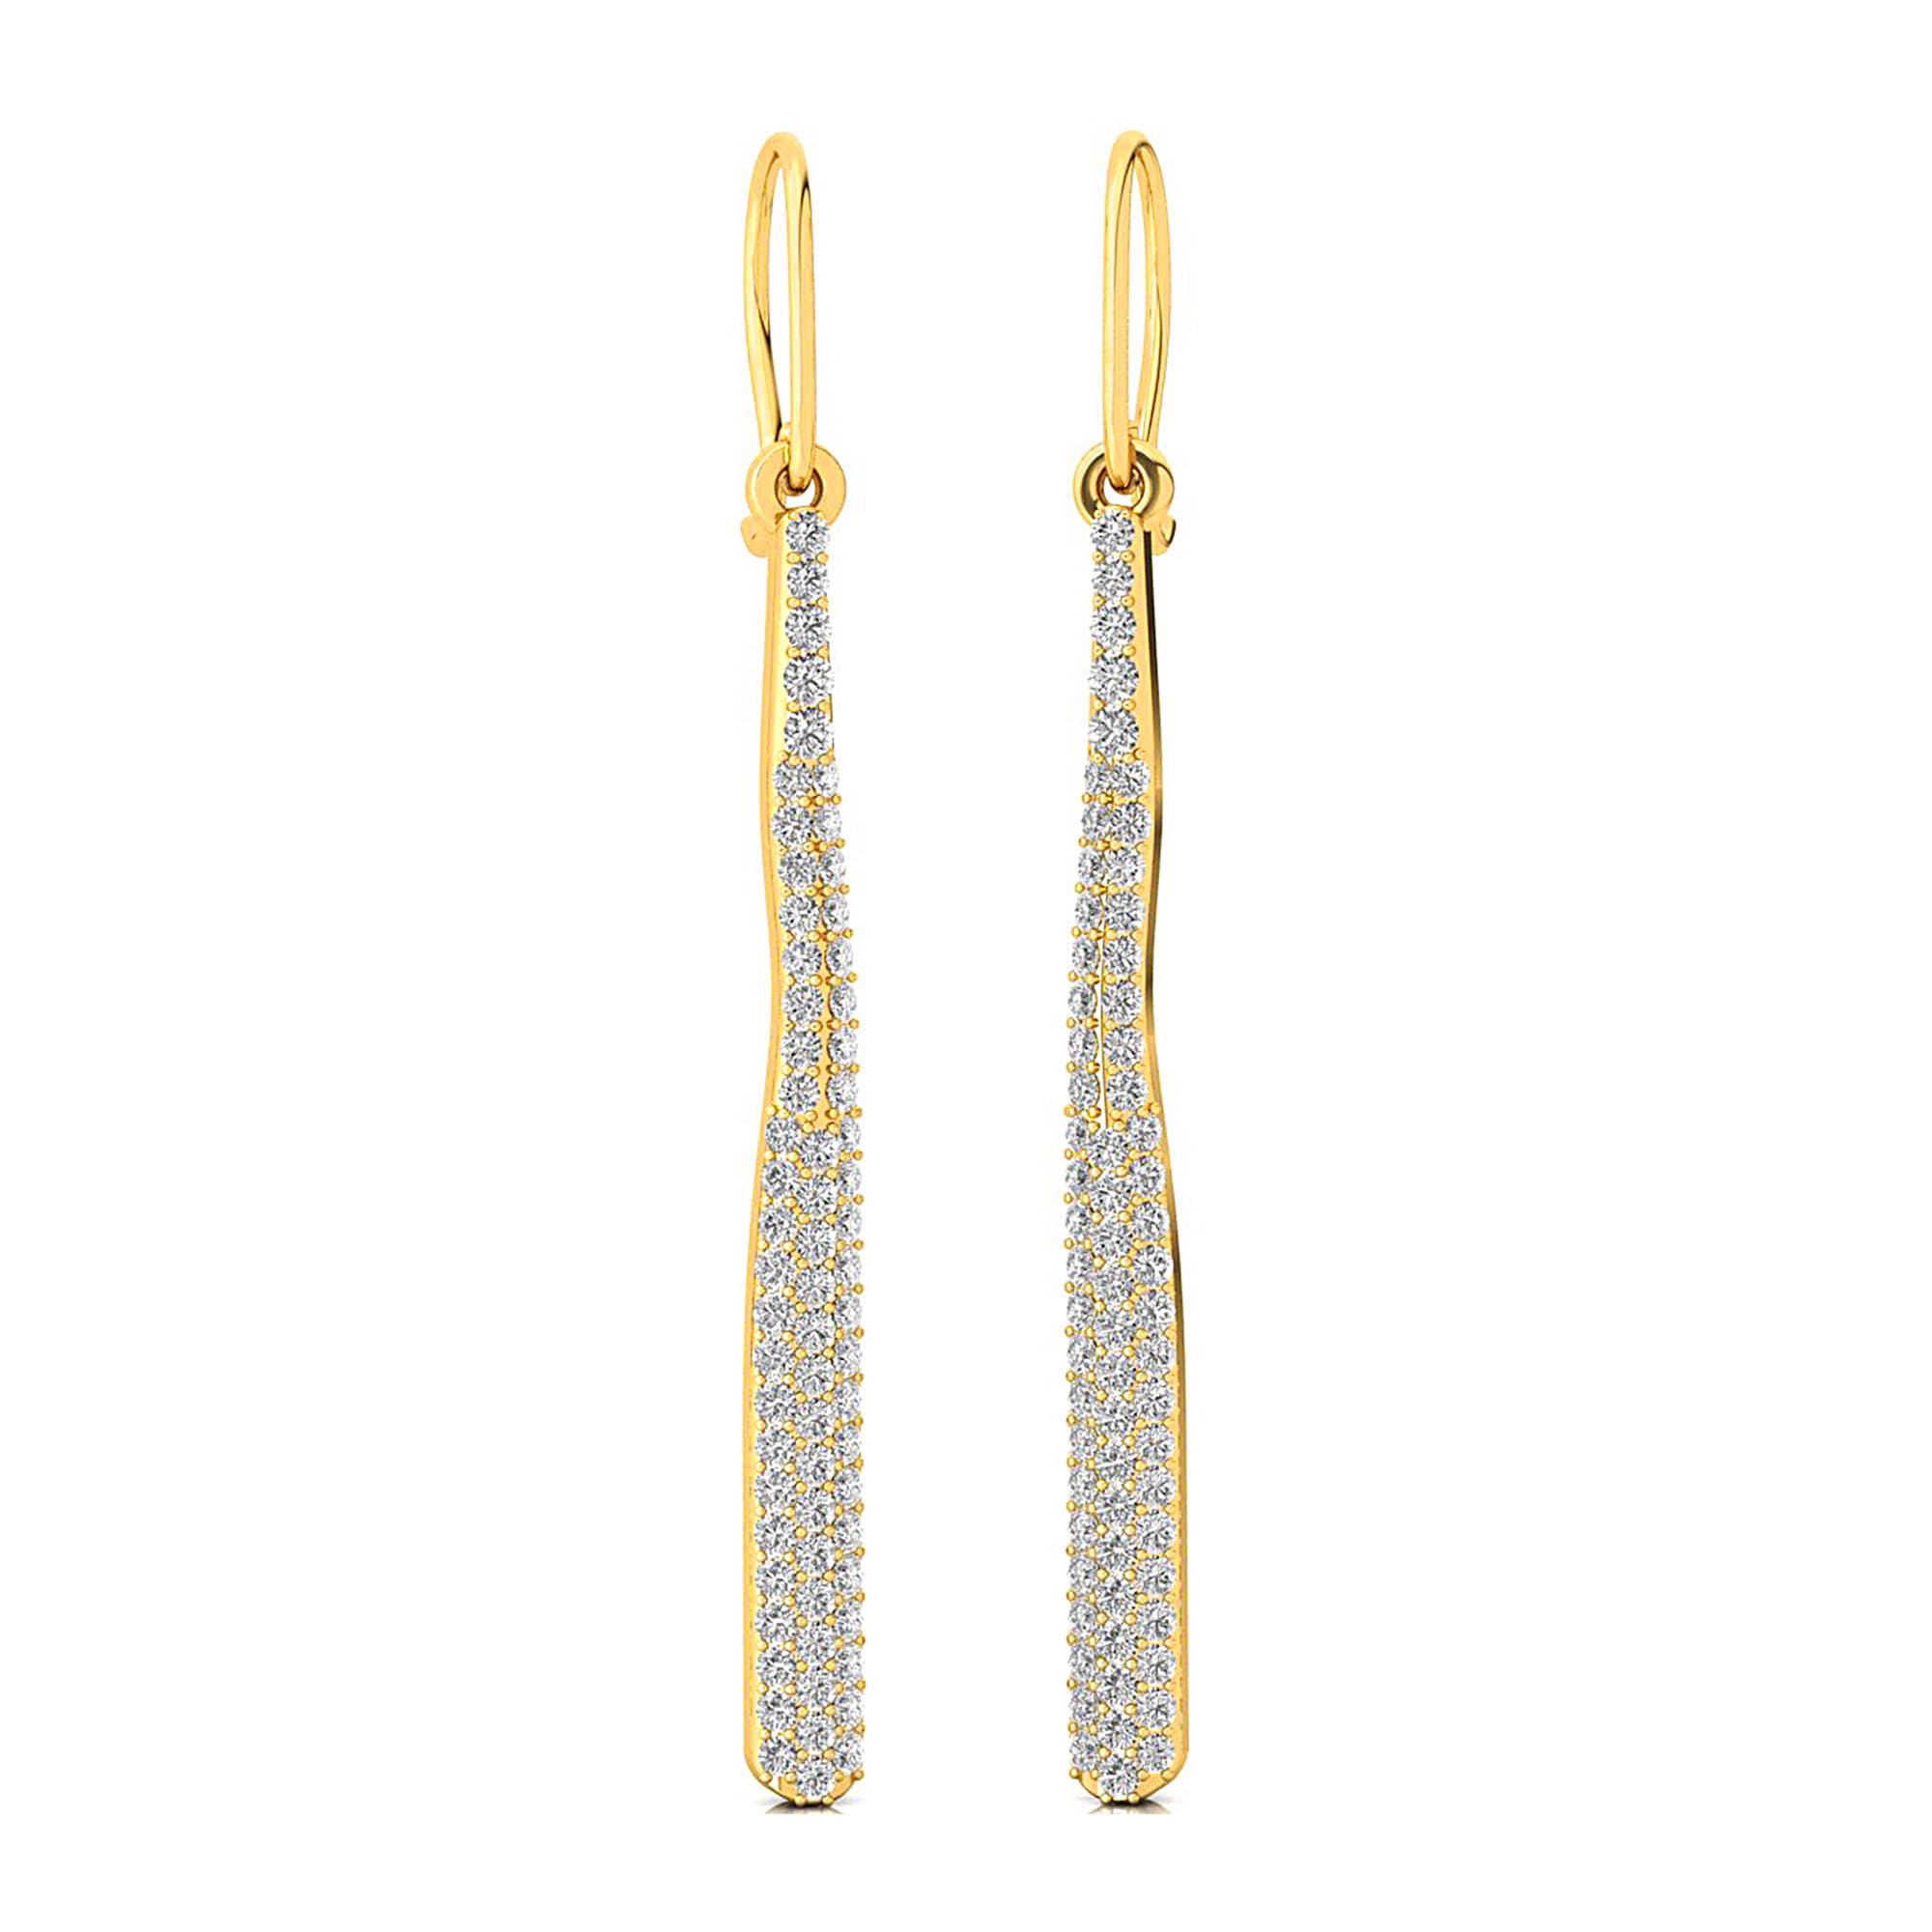 Elegant Long Straight Silver Earrings | Sleek & Modern Jewelry - Frobolous